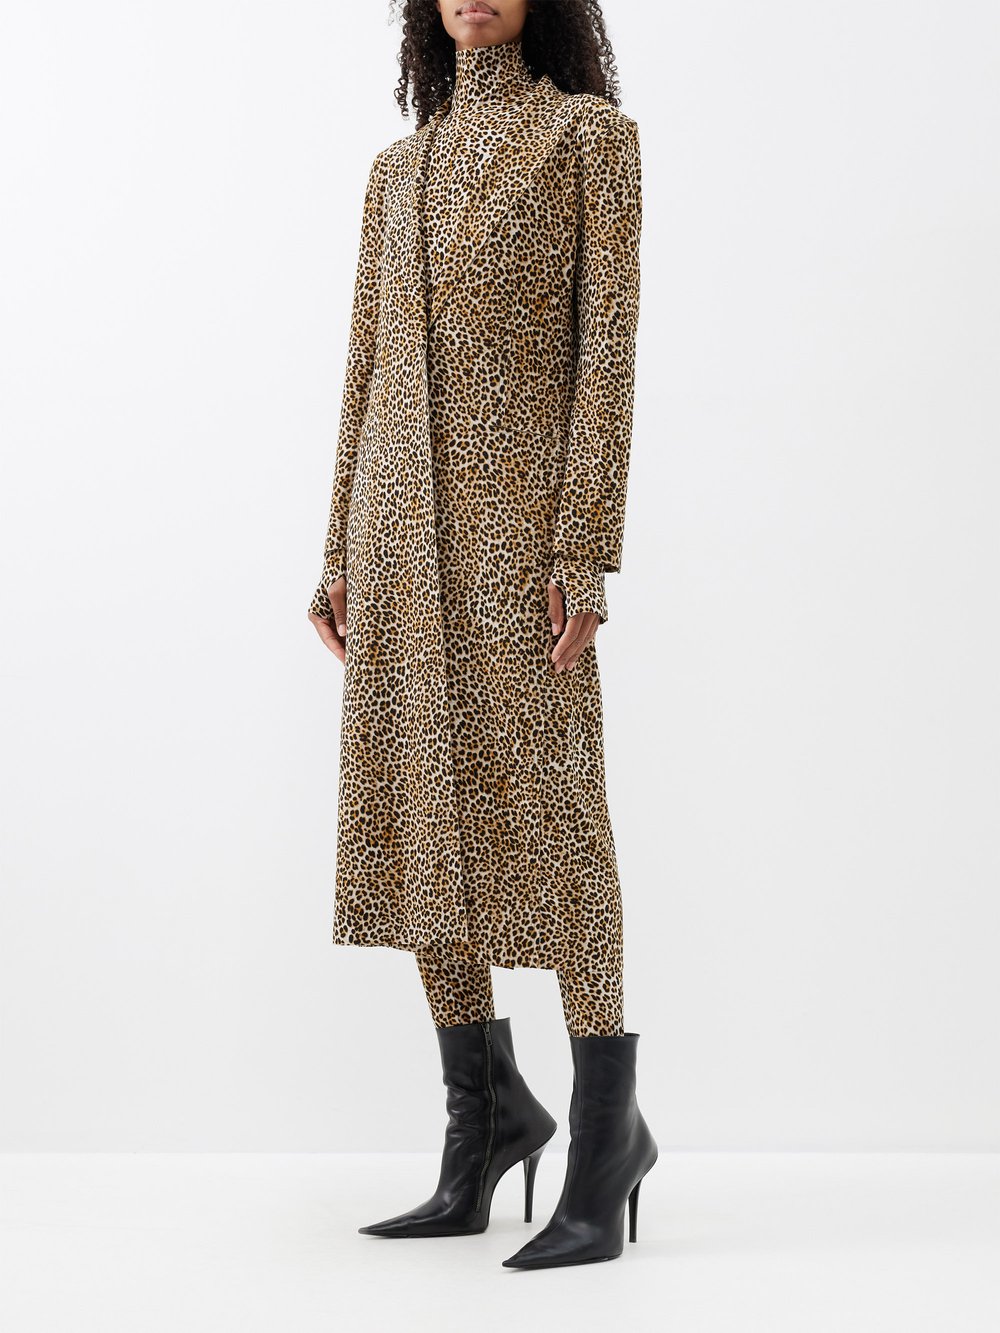 Однобортное трикотажное пальто с леопардовым принтом Norma Kamali, коричневый